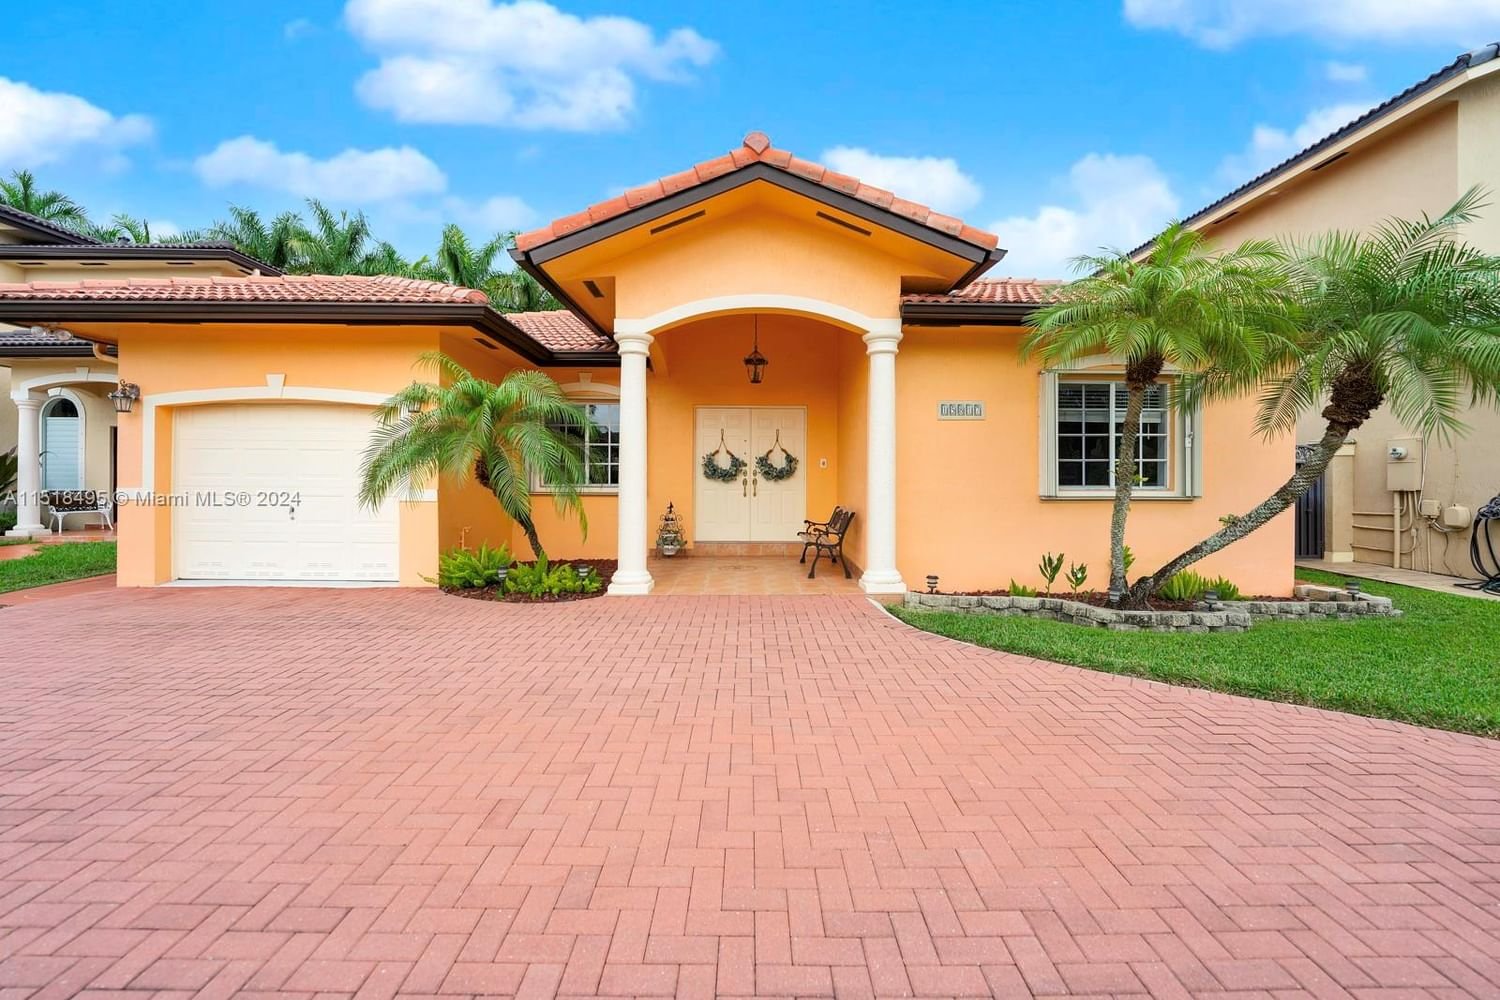 Real estate property located at 15817 69th Ln, Miami-Dade County, LAROSE SUB, Miami, FL